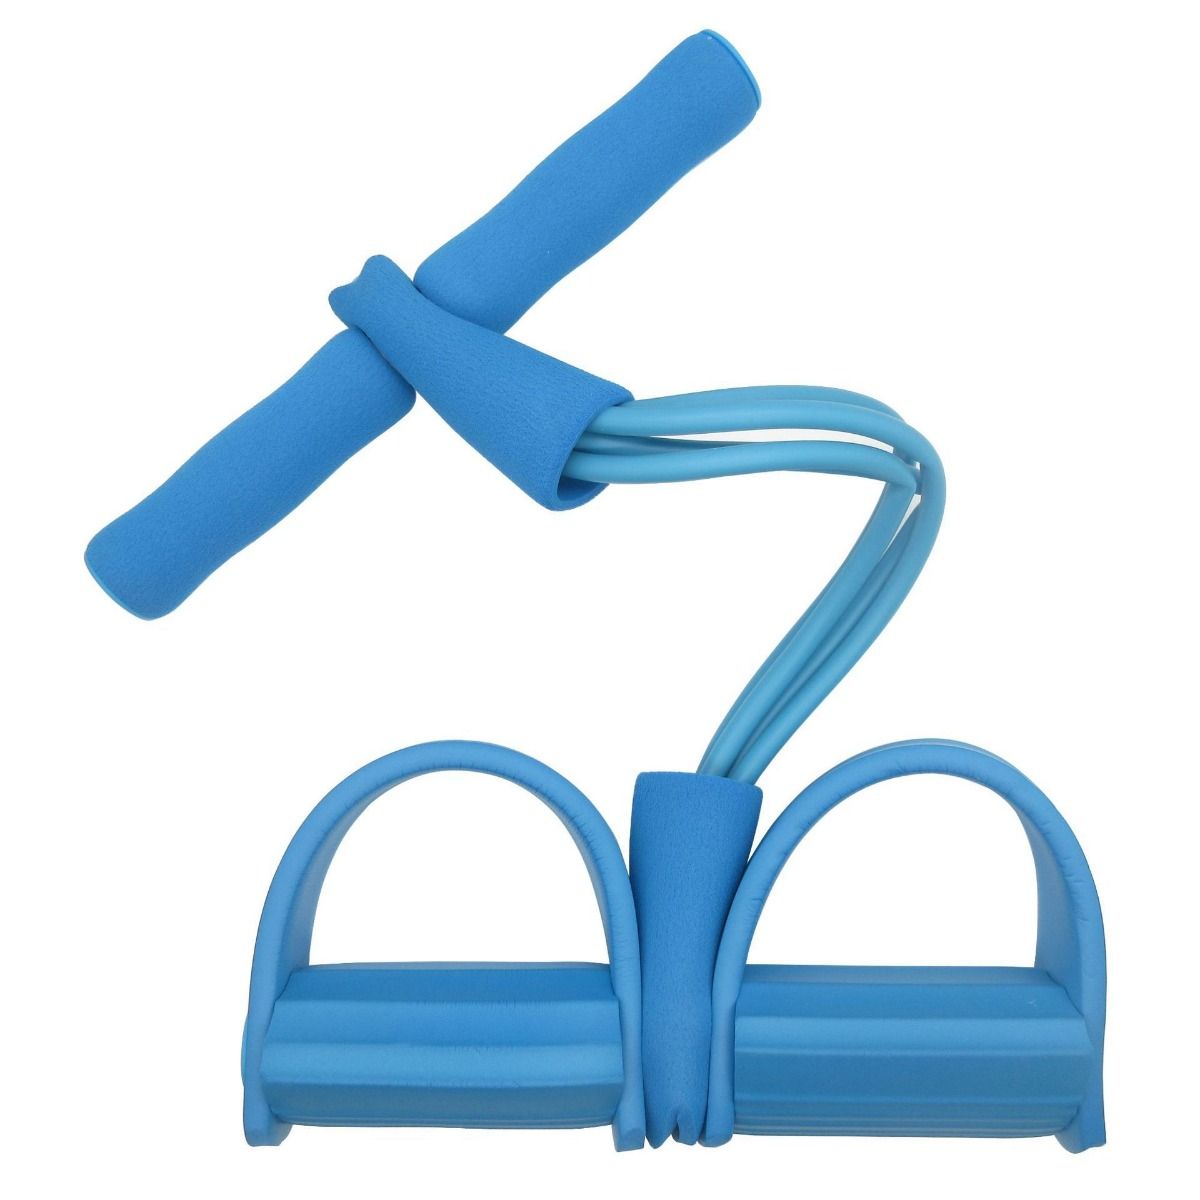 新款脚蹬拉力器仰卧起坐辅助器健身瑜伽垫瘦身运动拉力带弹力绳ZZX